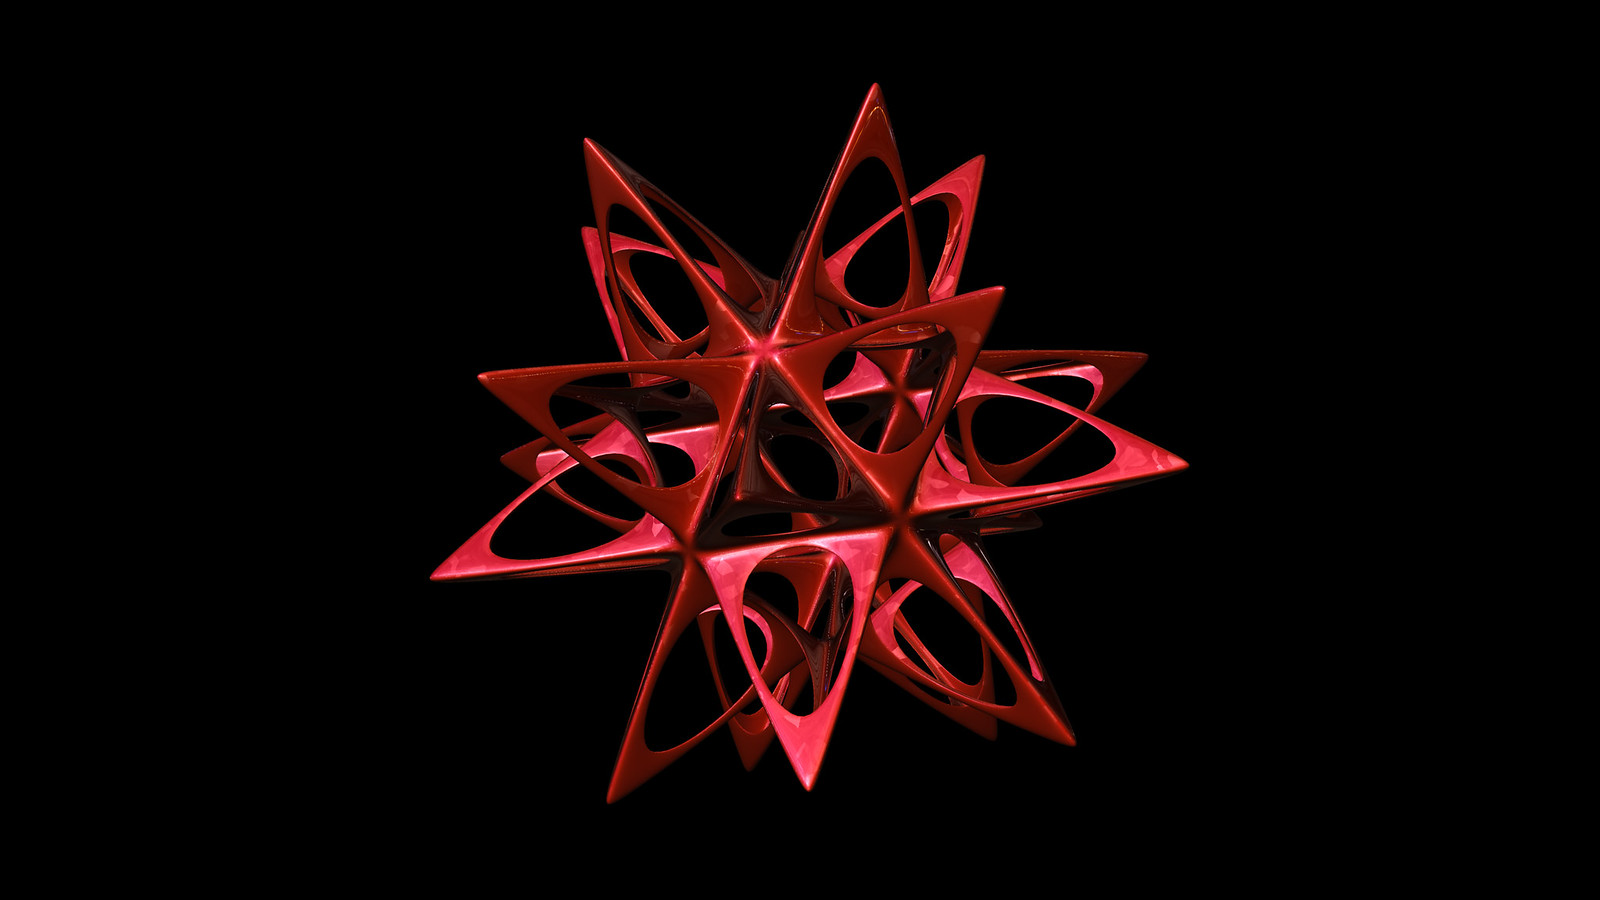 icosahedron spiky soft